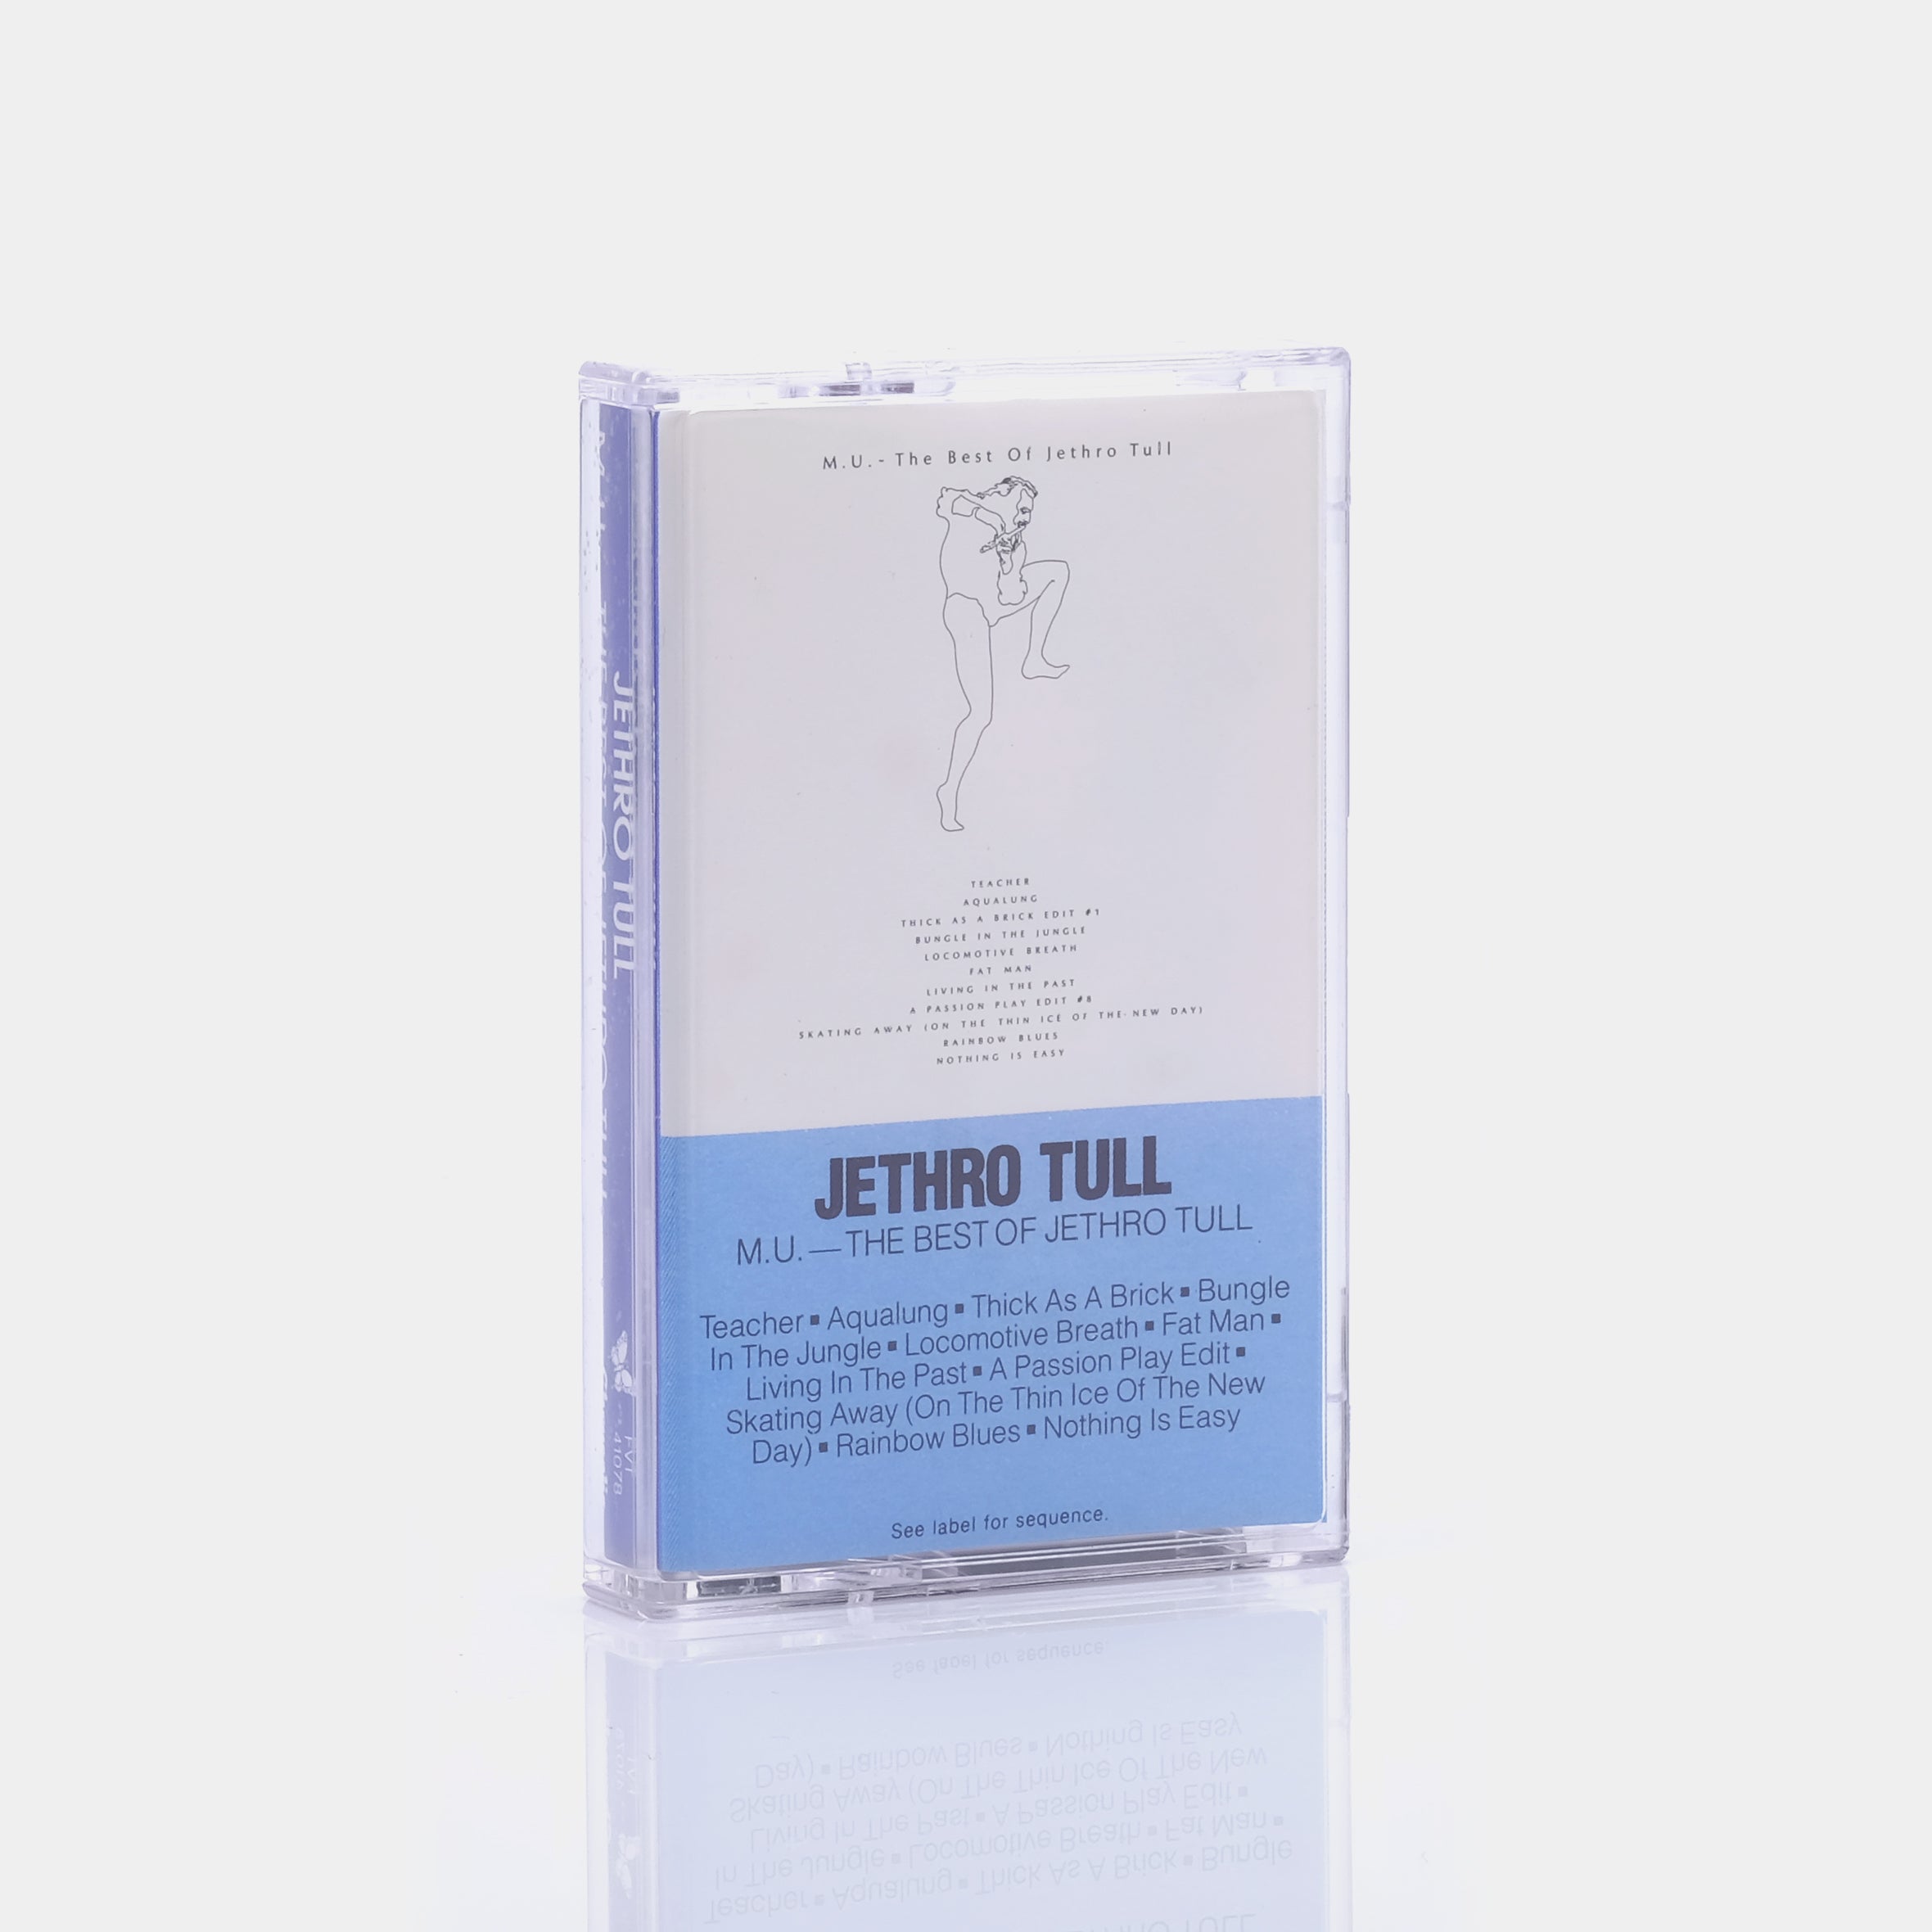 Jethro Tull - M.U. - The Best Of Jethro Tull Cassette Tape